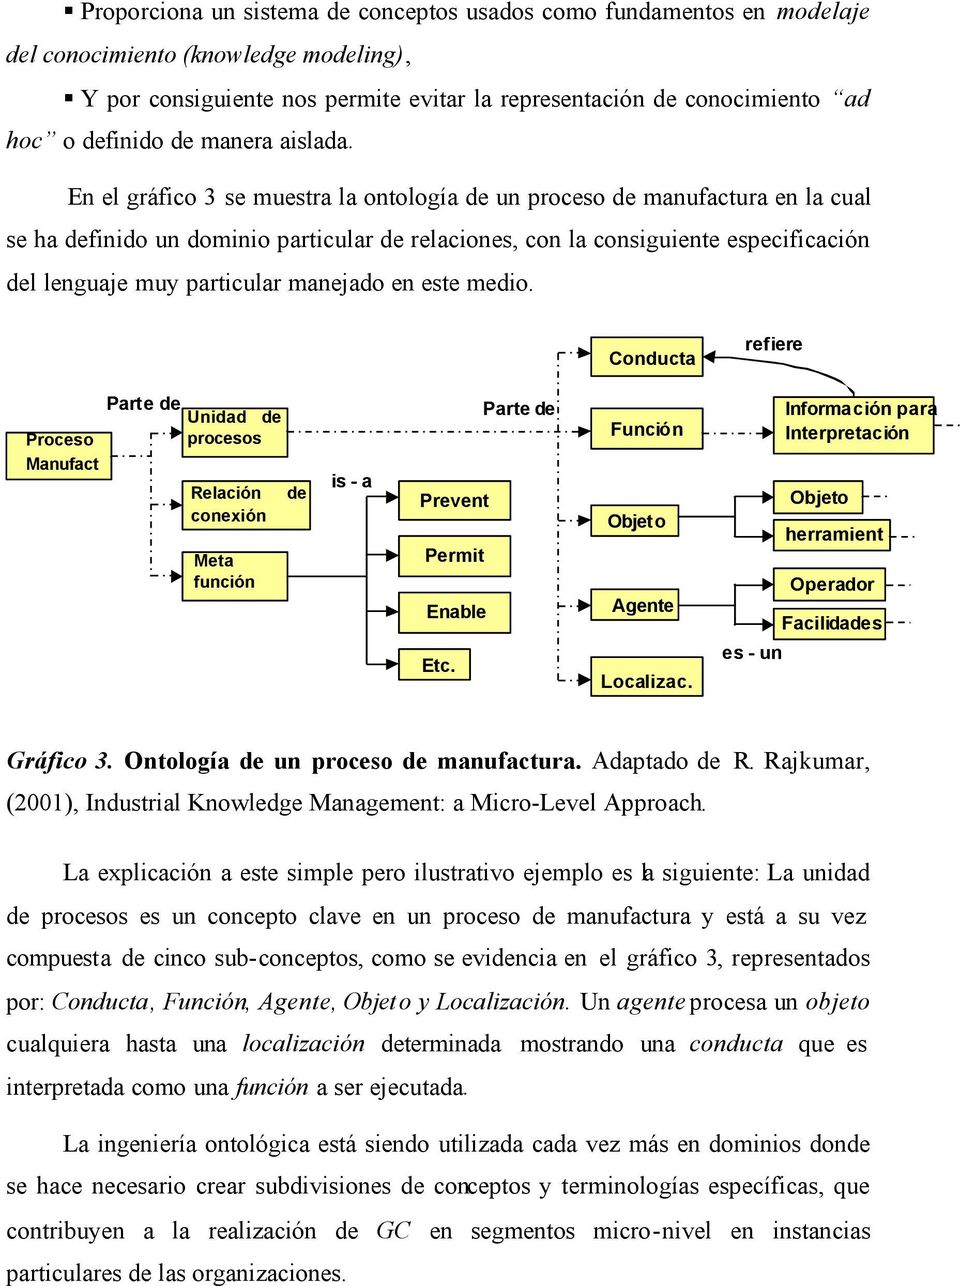 En el gráfico 3 se muestra la ontología de un proceso de manufactura en la cual se ha definido un dominio particular de relaciones, con la consiguiente especificación del lenguaje muy particular